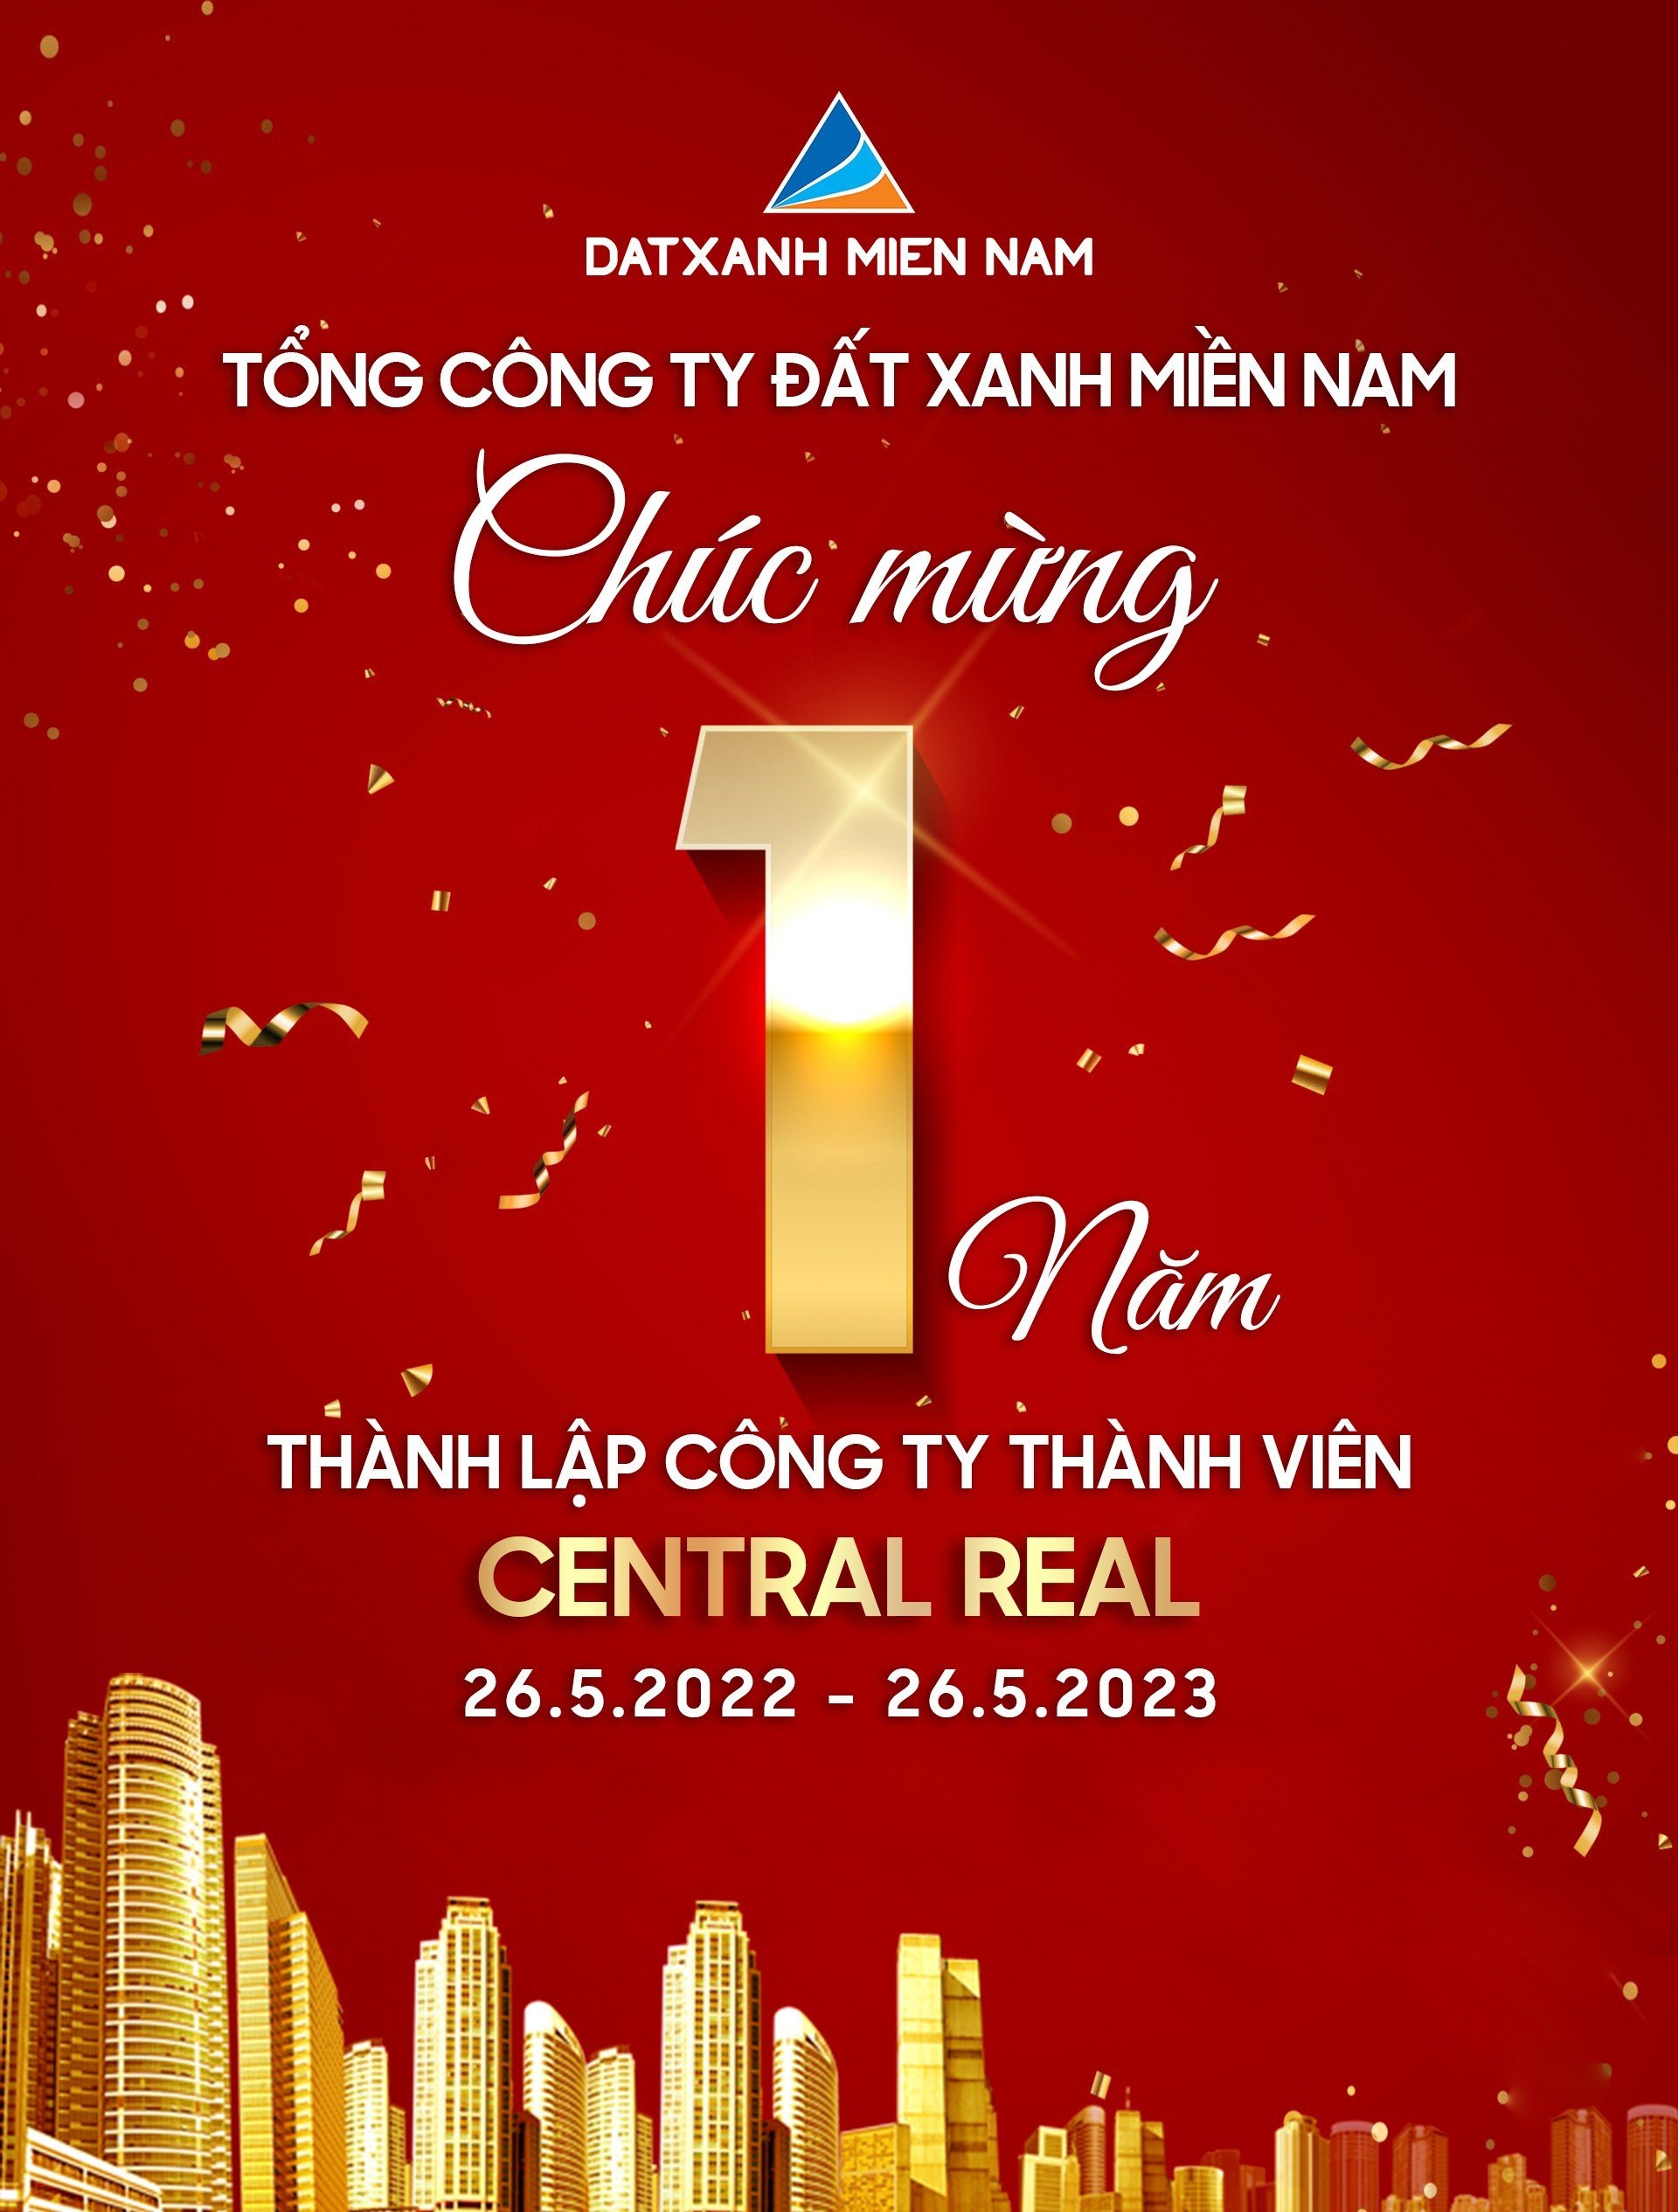 Tổng Công ty Đất Xanh Miền Nam chúc mừng 1 năm thành lập CTTV CENTRAL REAL